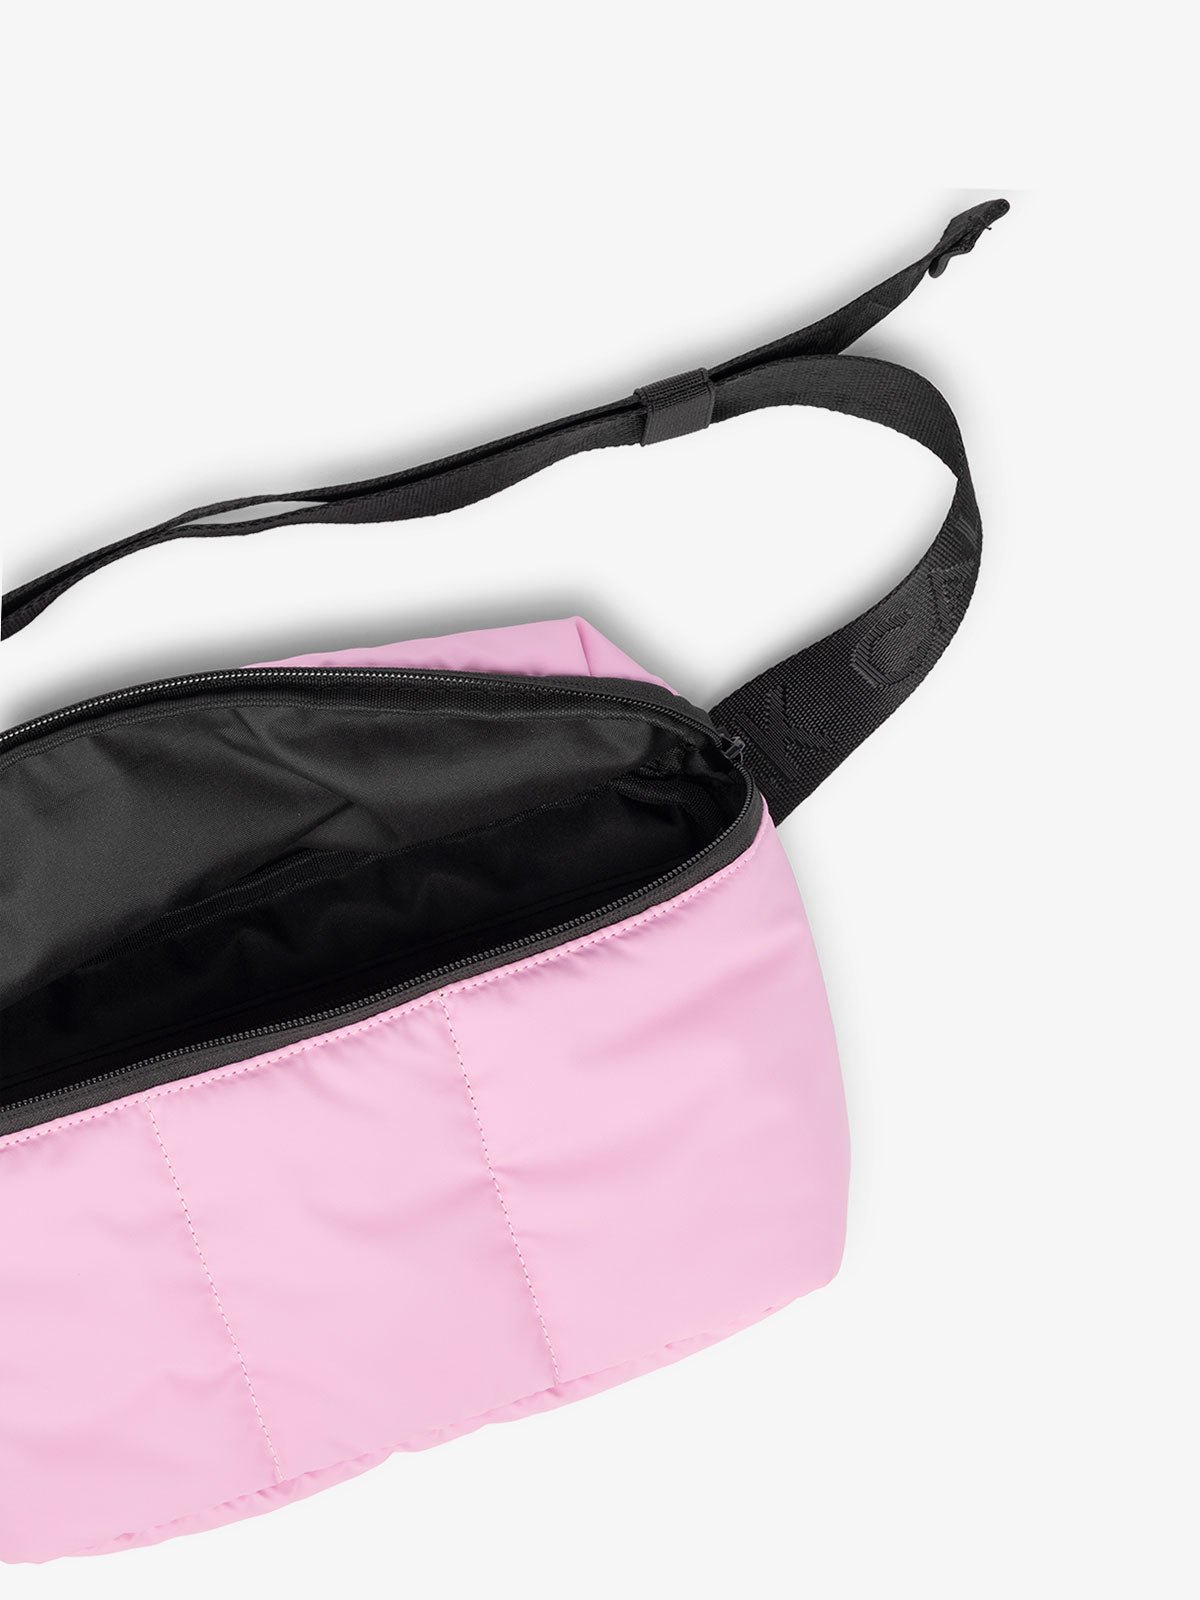 CALPAK Luka travel Belt Bag with multiple pockets in pink